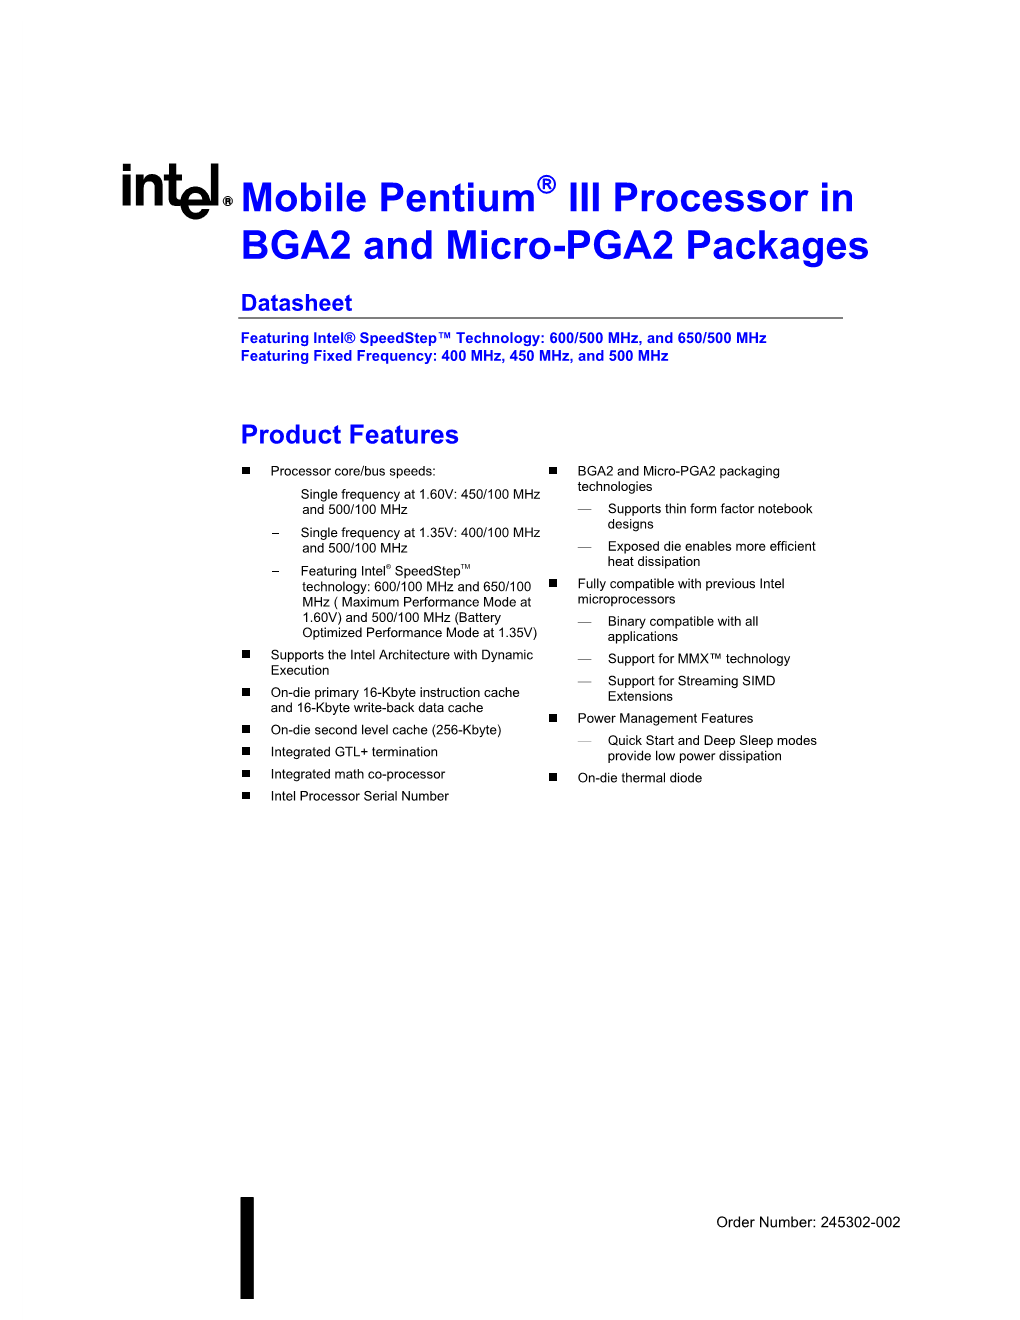 Mobile Pentium III Processor in BGA2 and Micro-PGA2 Packages Datasheet